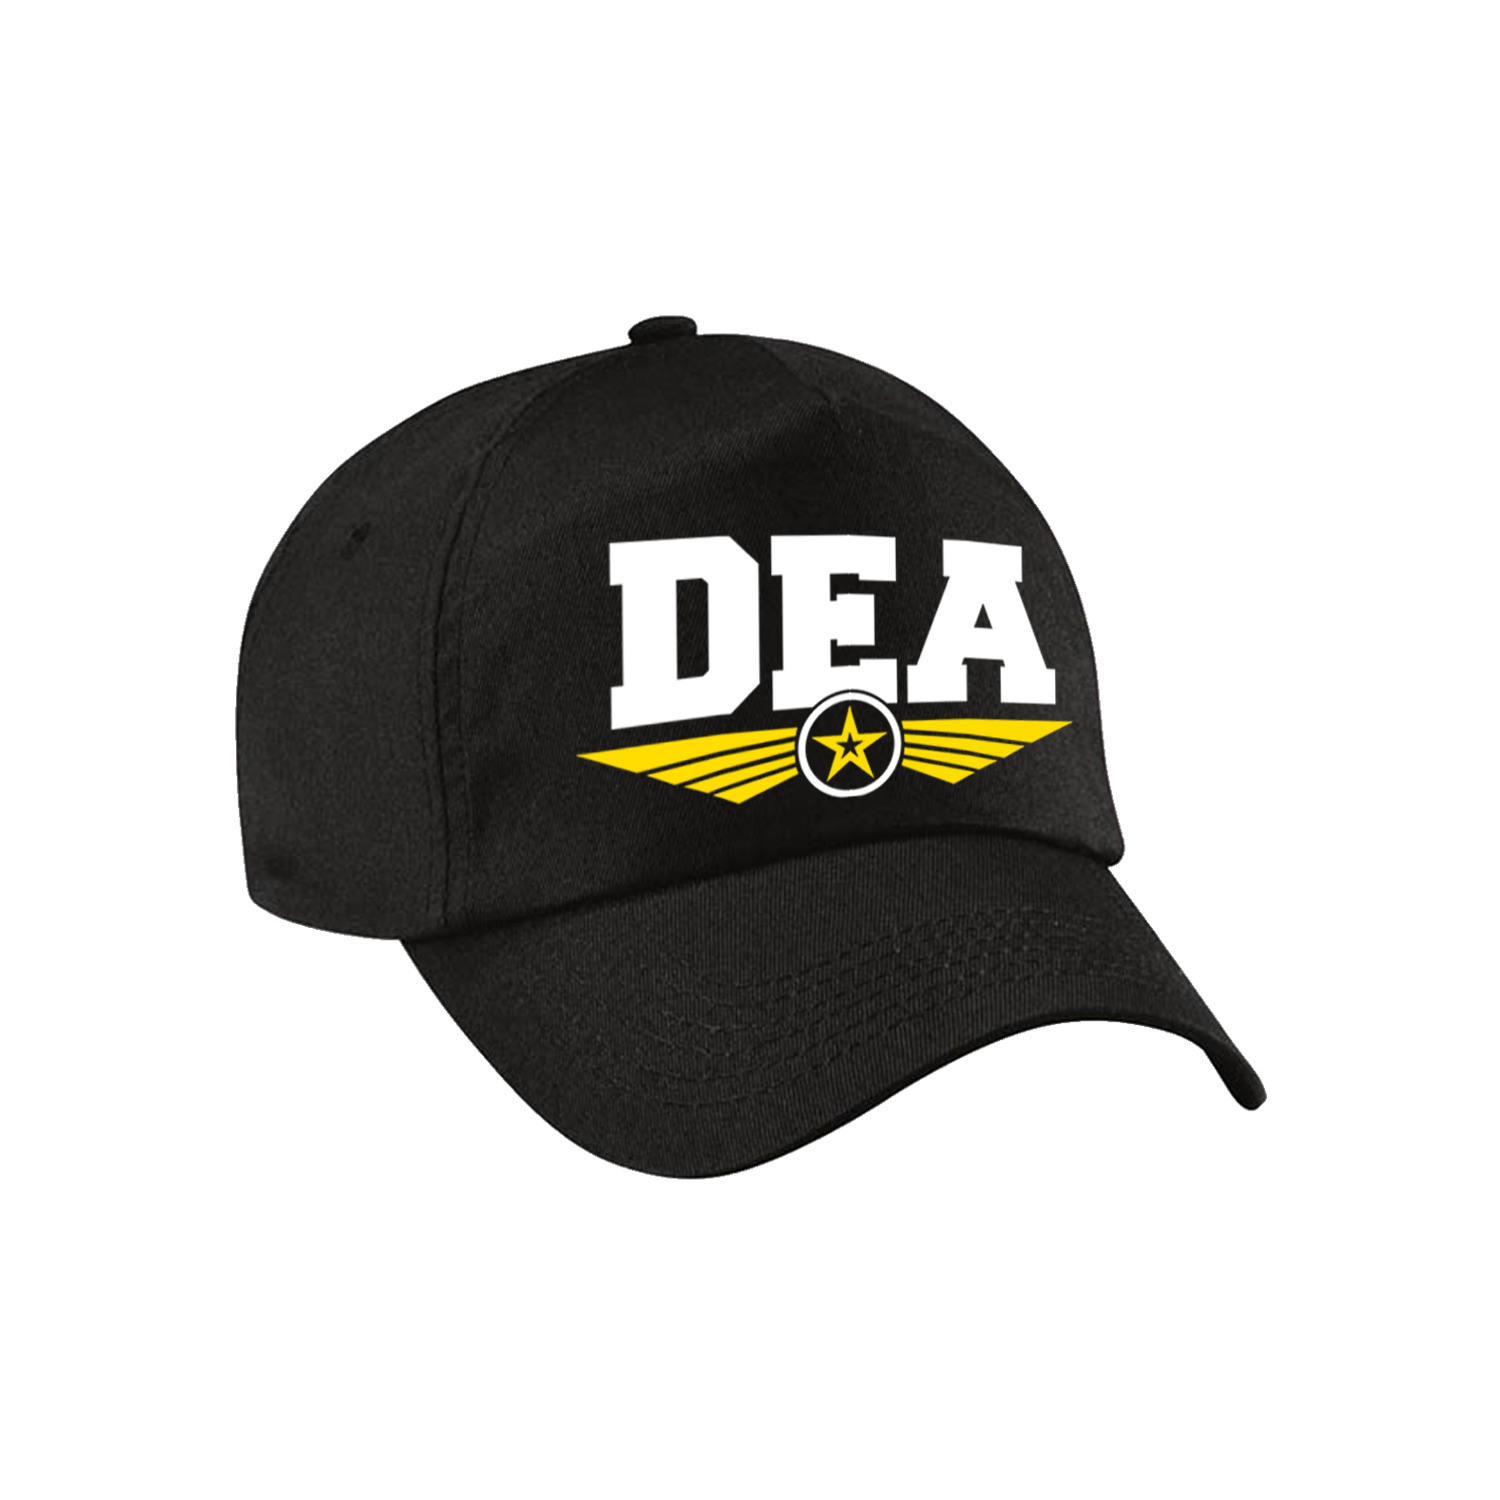 DEA agent tekst pet-baseball cap zwart voor kinderen